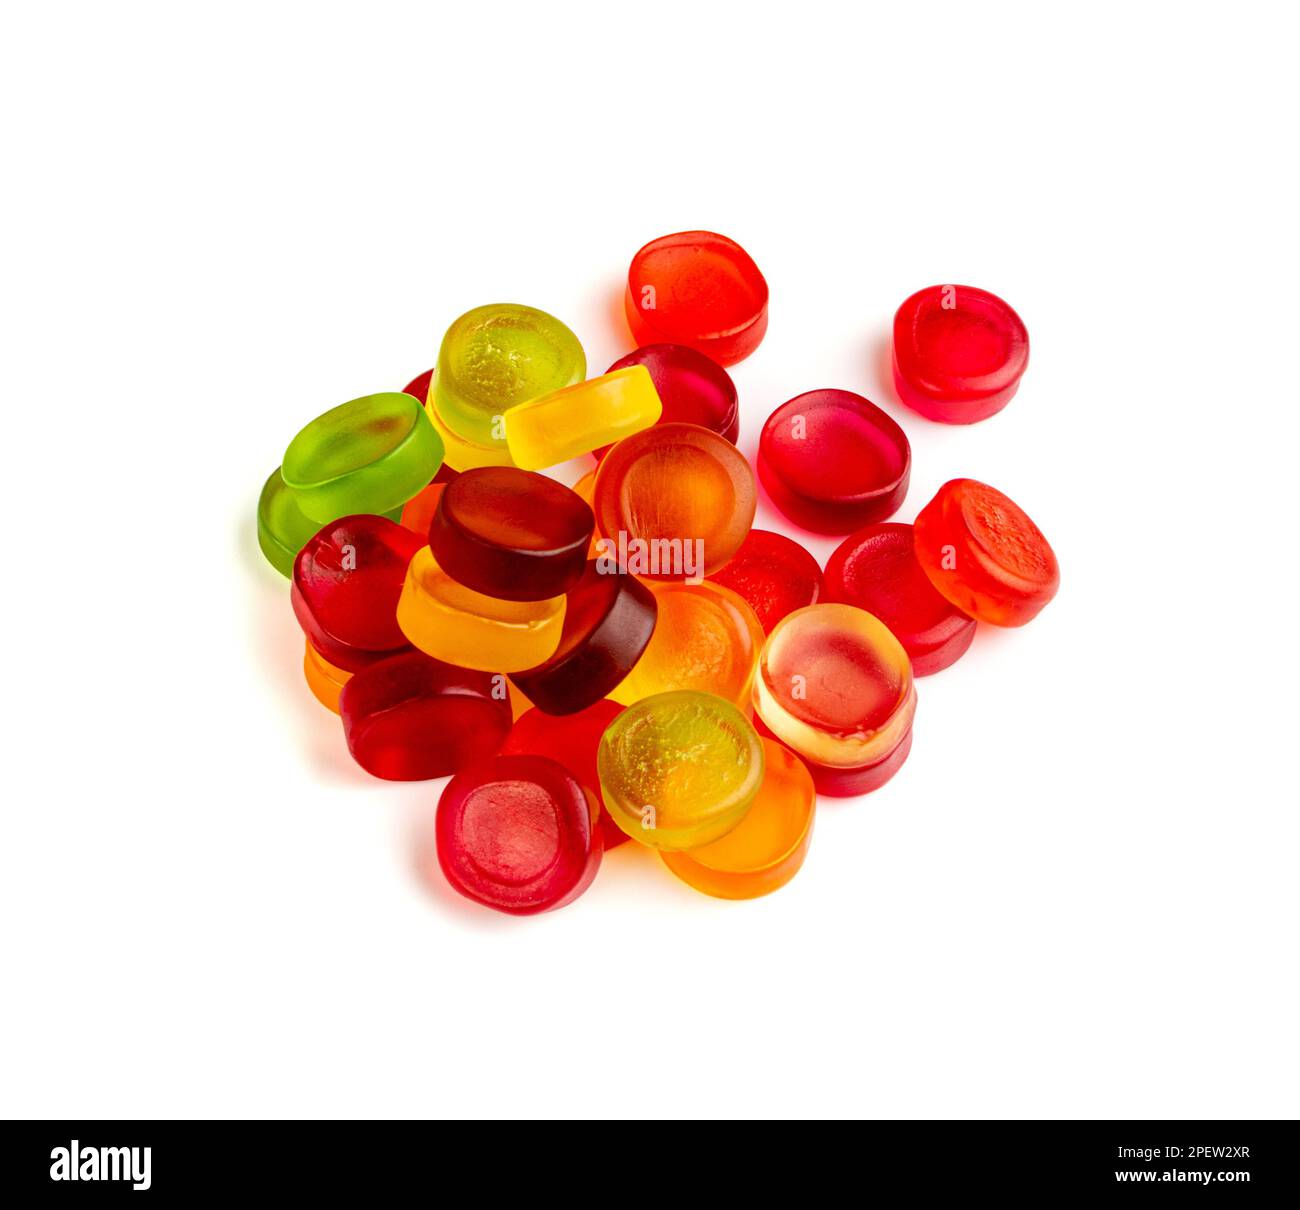 Rund Gummy Candy Pile isoliert, kauende bunte Marmelade Pillen, Gelee  Gumdrop Heap, Gelatine Candies auf weißem Hintergrund Draufsicht  Stockfotografie - Alamy